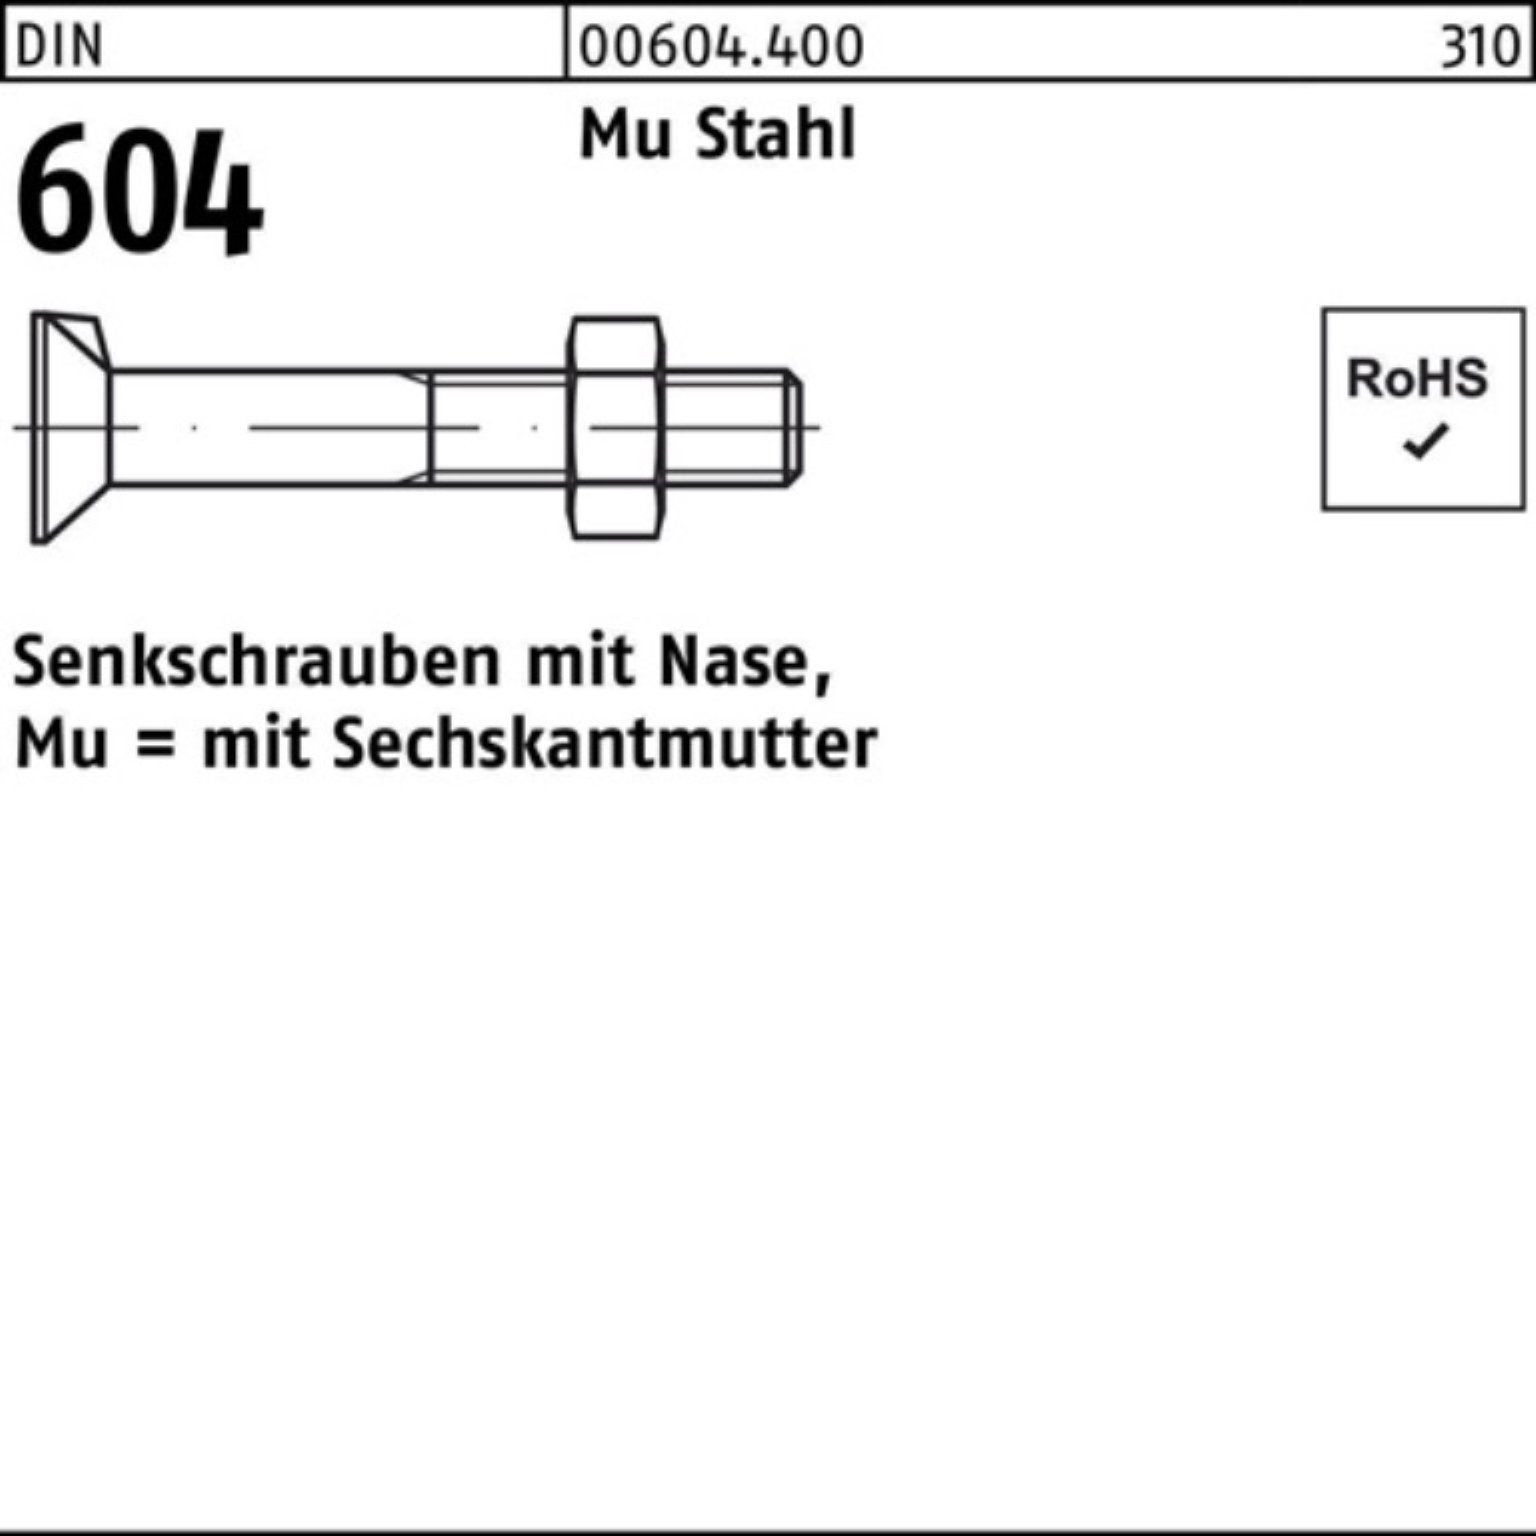 Reyher Senkschraube 100er Pack Senkschraube DIN 604 Nase/6-ktmutter M10x 55 Mu Stahl 4.6 1